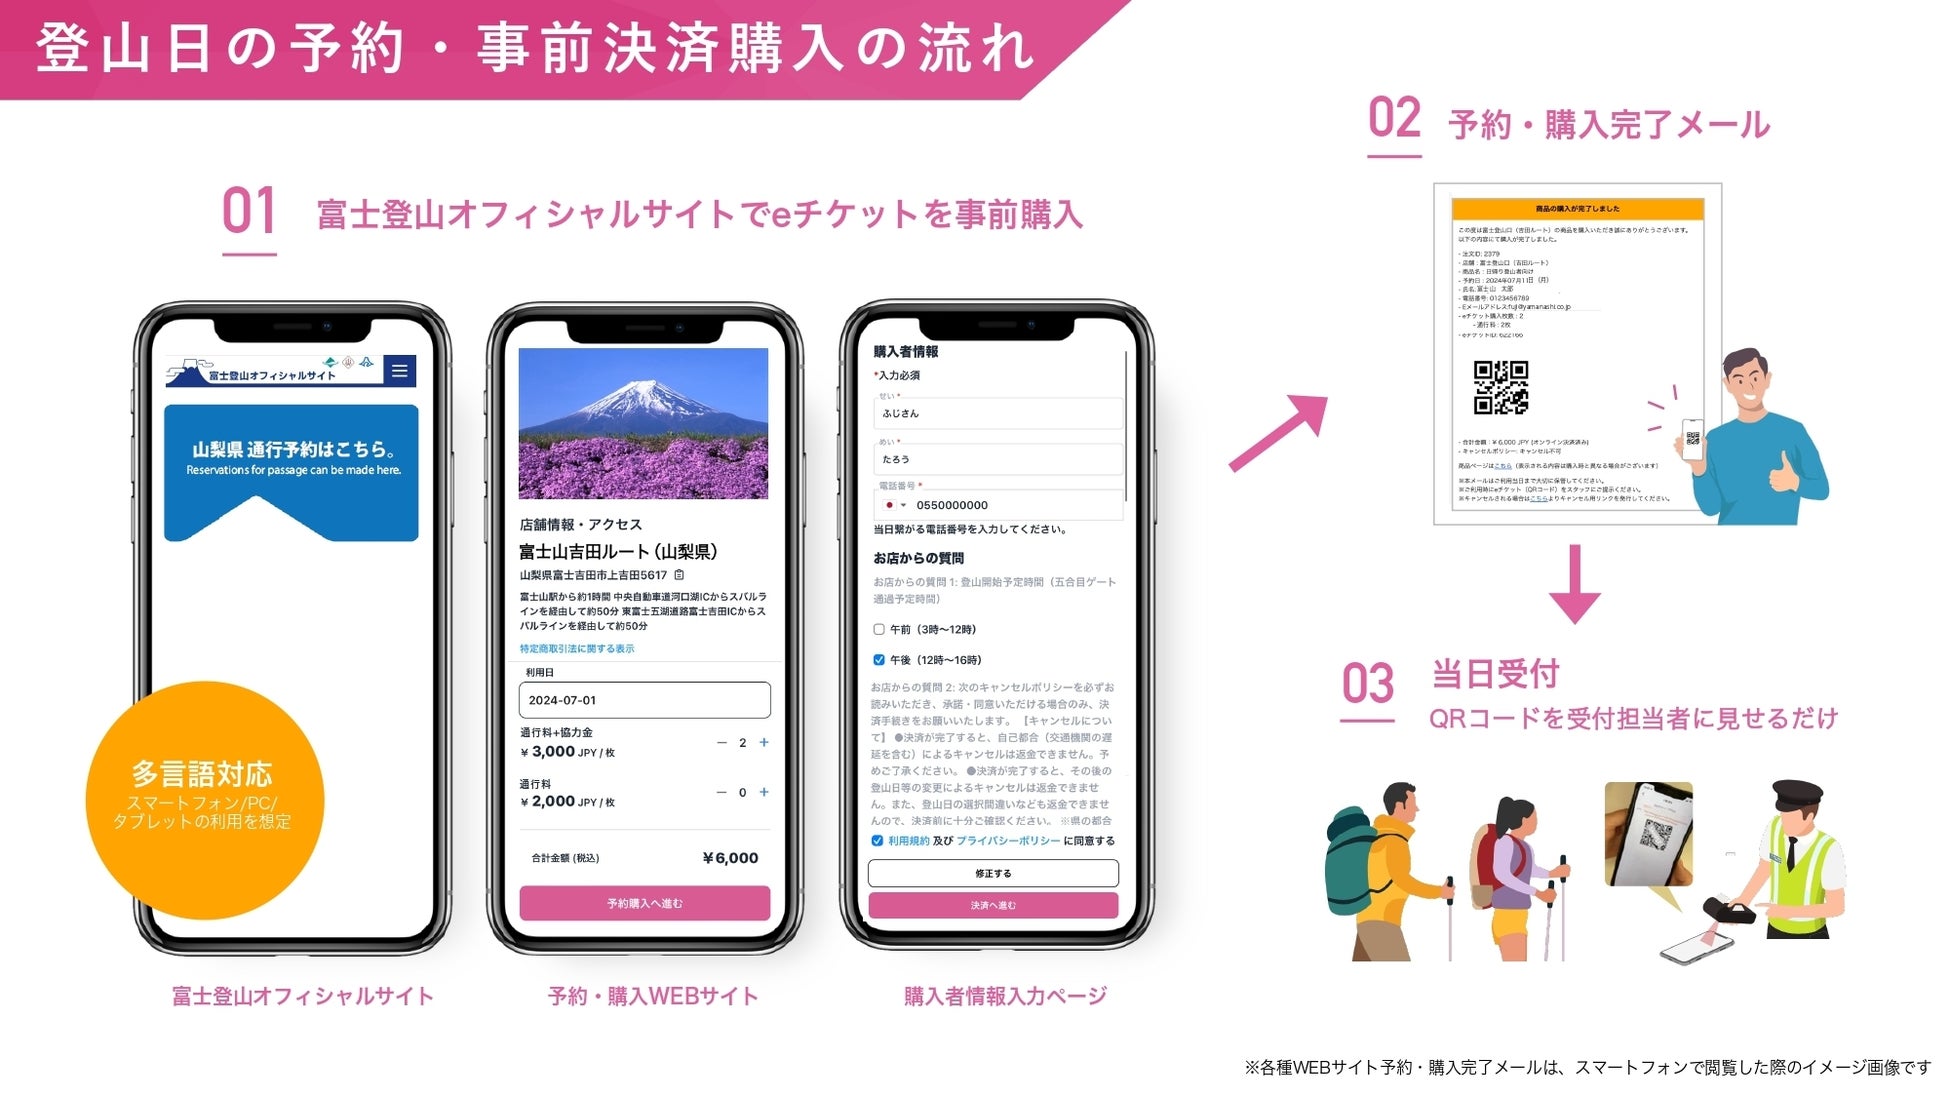 富士登山のオーバーツーリズム解消を目的とした「吉田ルート」の通行予約システムに『Japan ticket』が採用